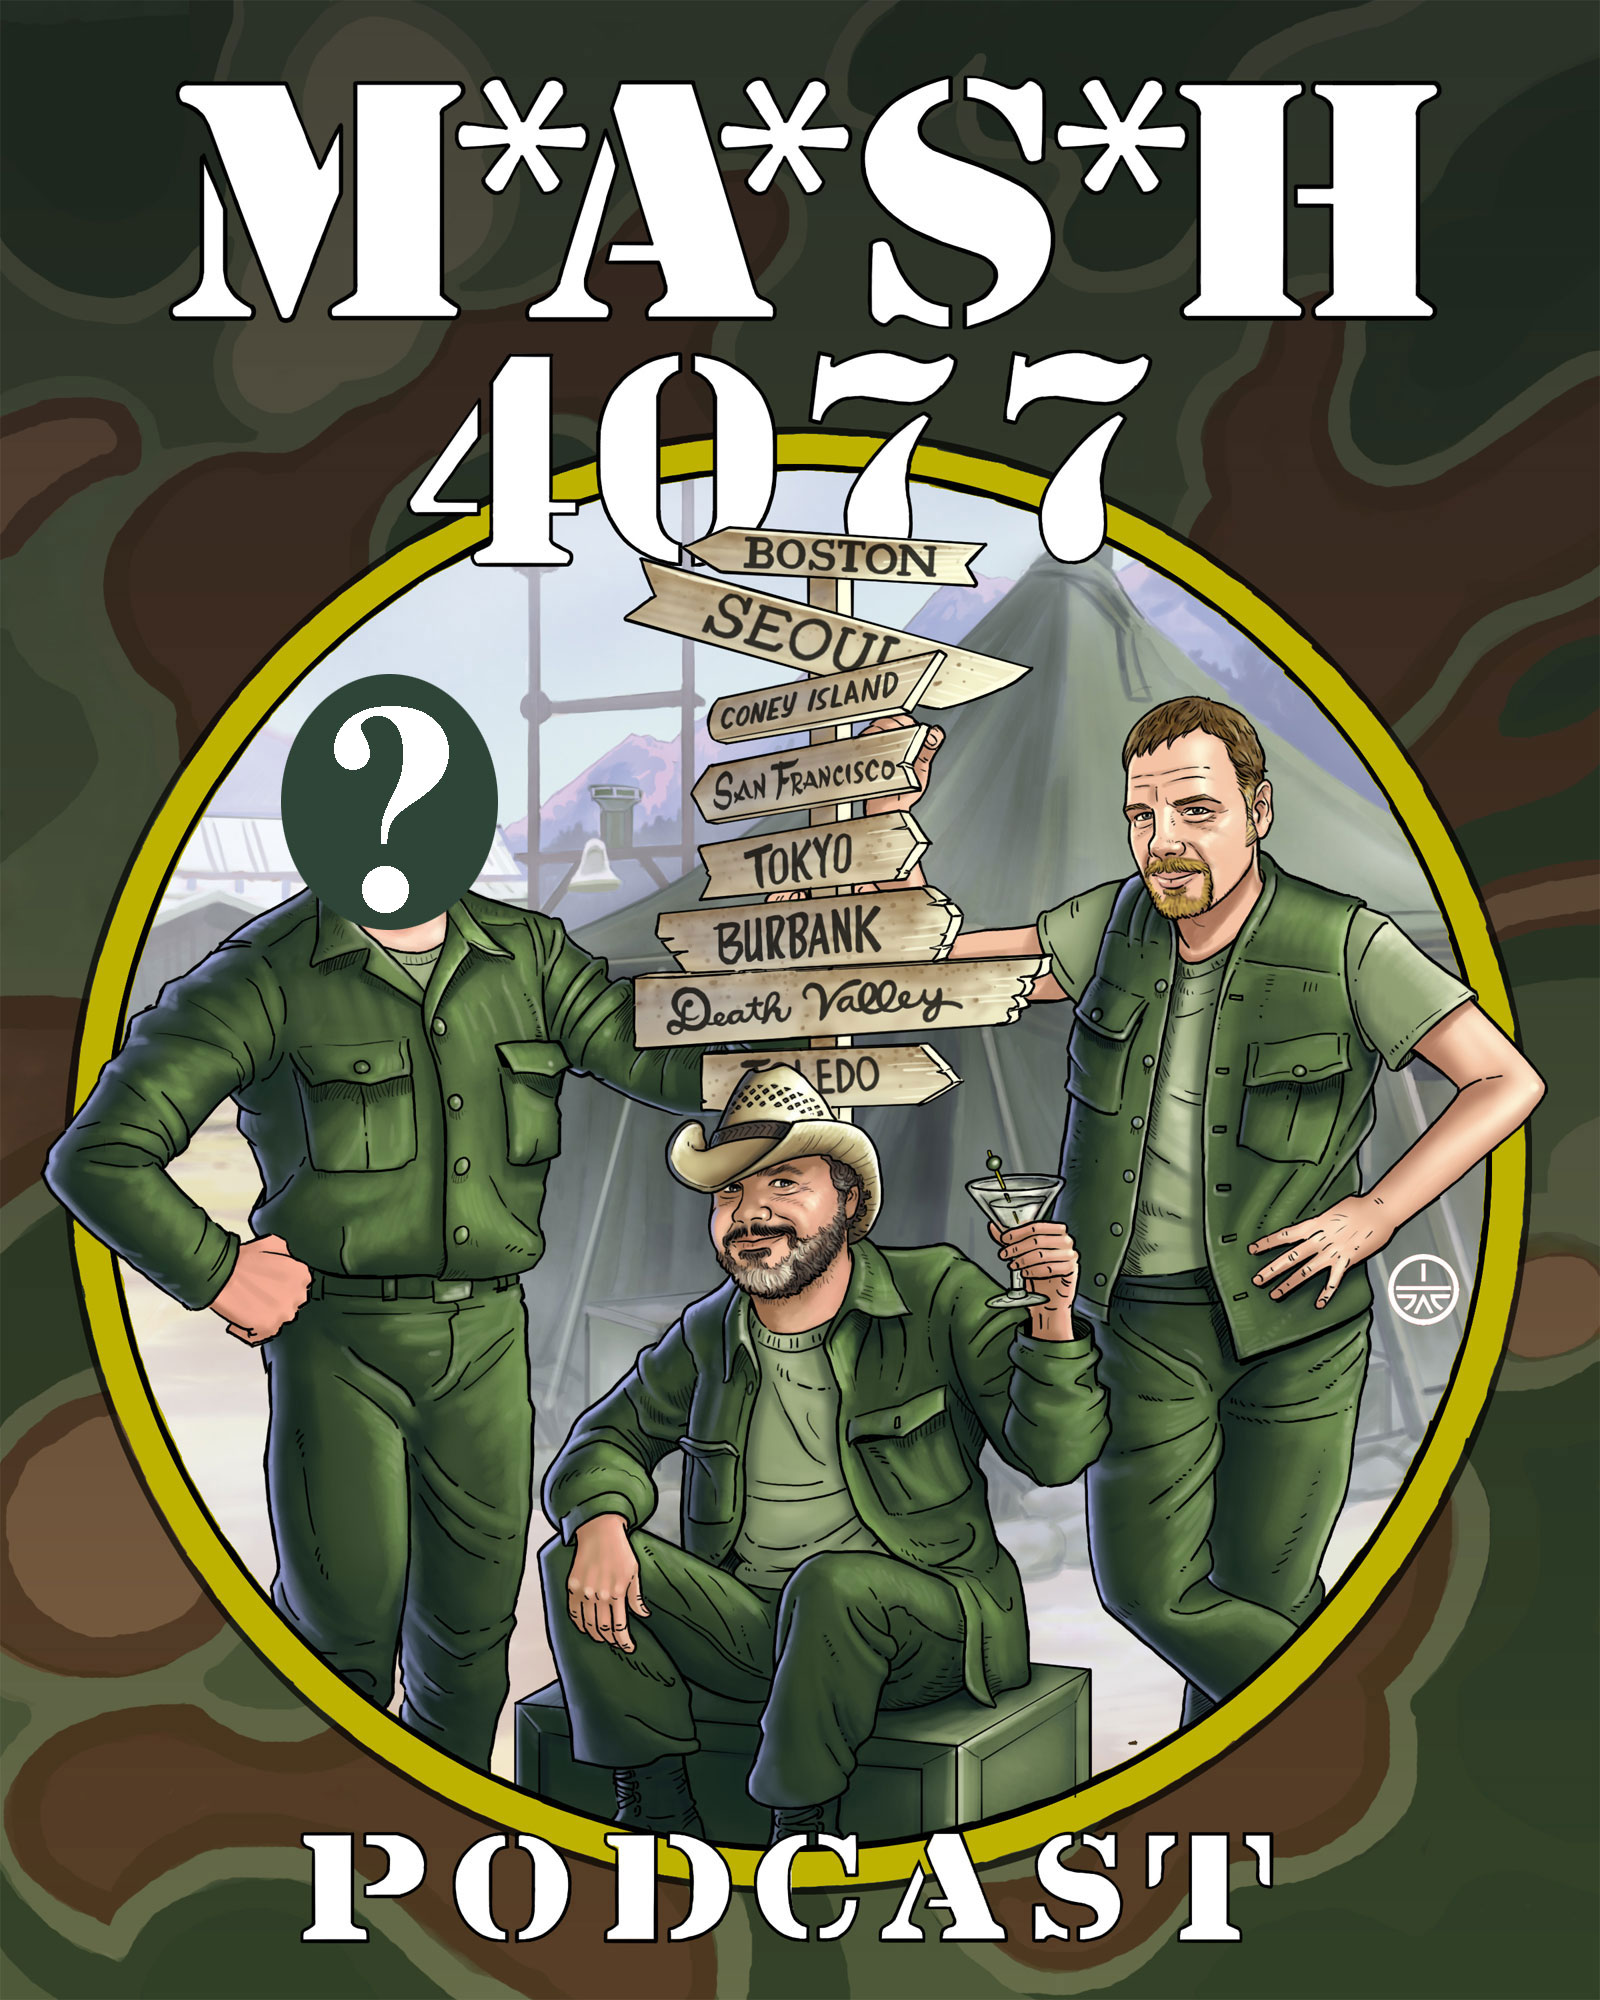 MASH 4077 Podcast Episode 132